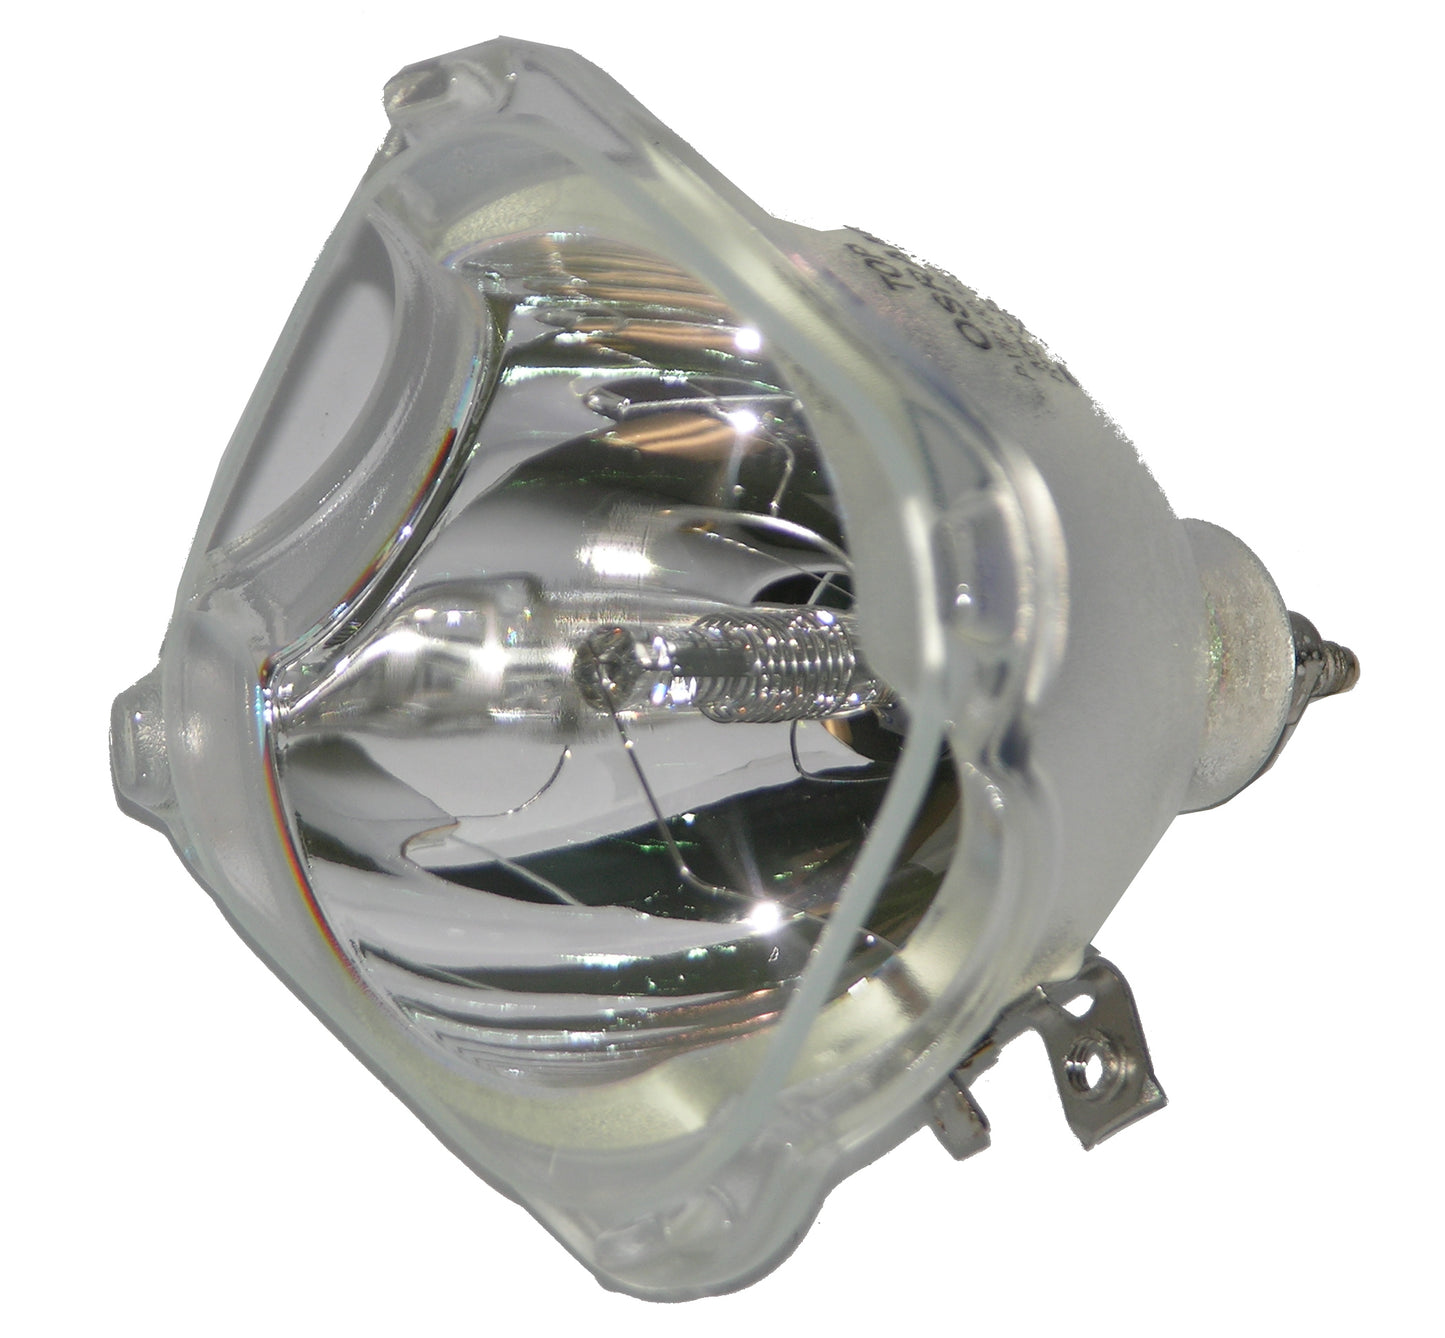 Osram DLP Lamp RP-E022-4, E22 LAMP 150/180W, used in: 915B403001, 915B441001, 915B455011, 915B455012, 915P049020, 915P061010